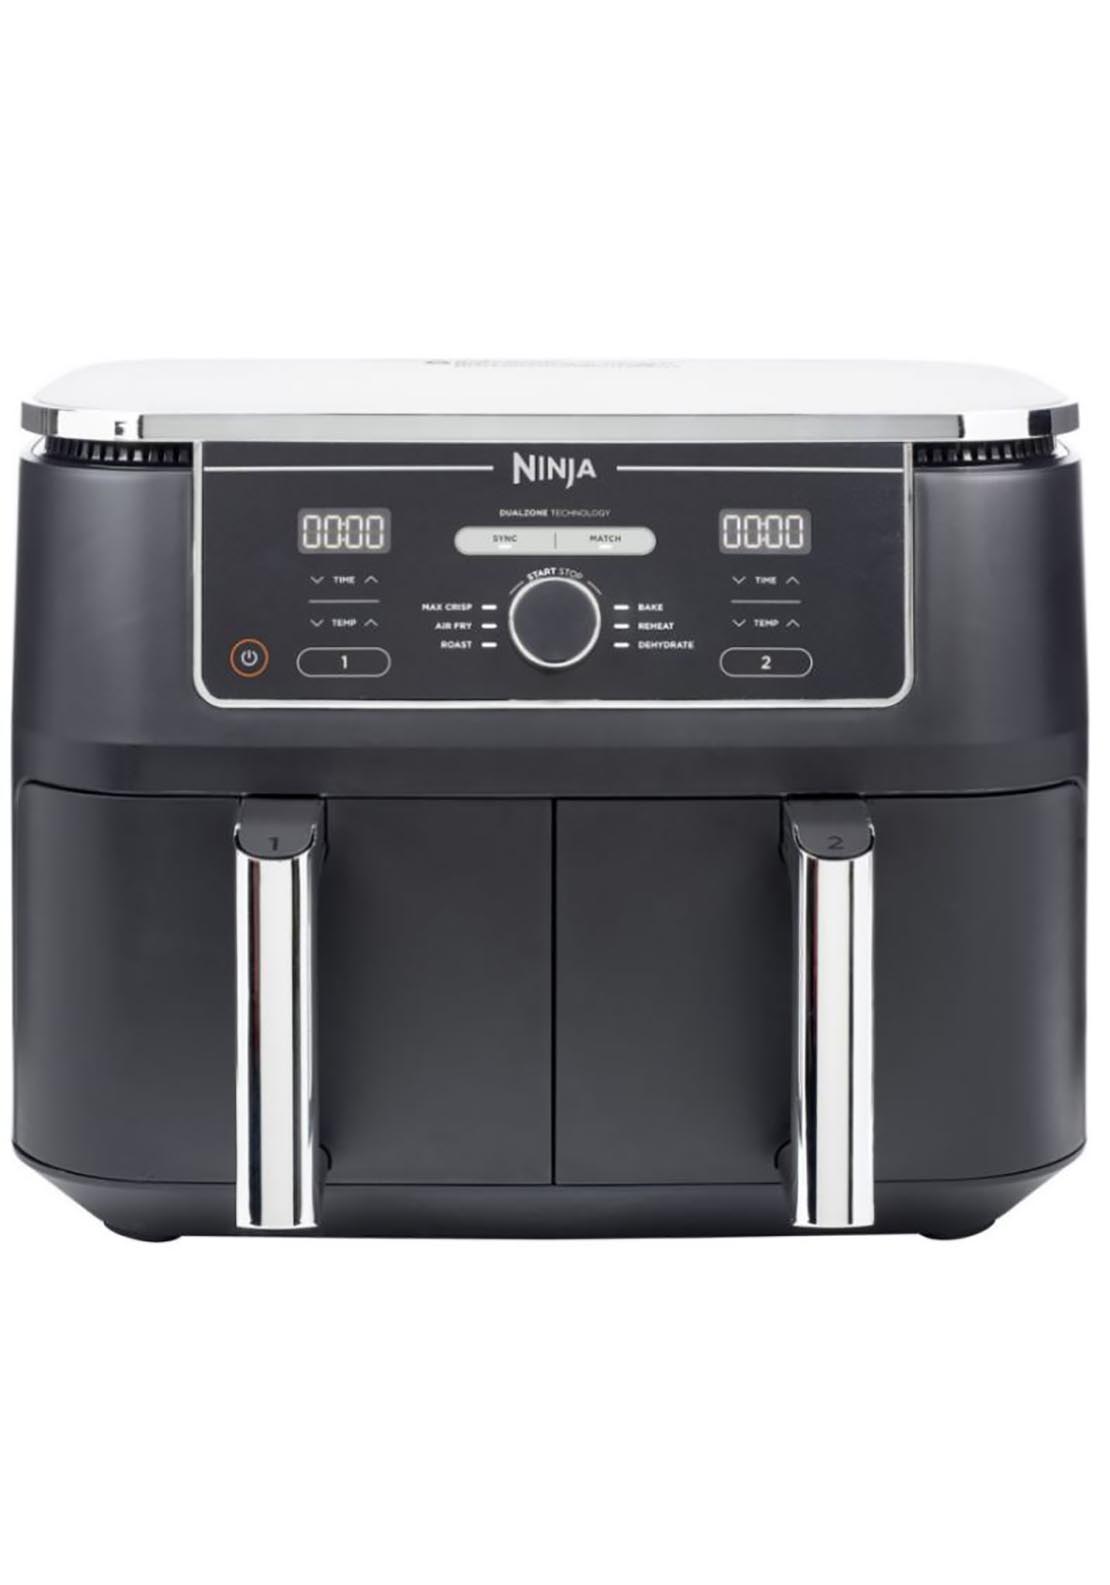 Ninja Foodi Max Dual Zone Air Fryer - 9.4L AF400UK - Black 1 Shaws Department Stores